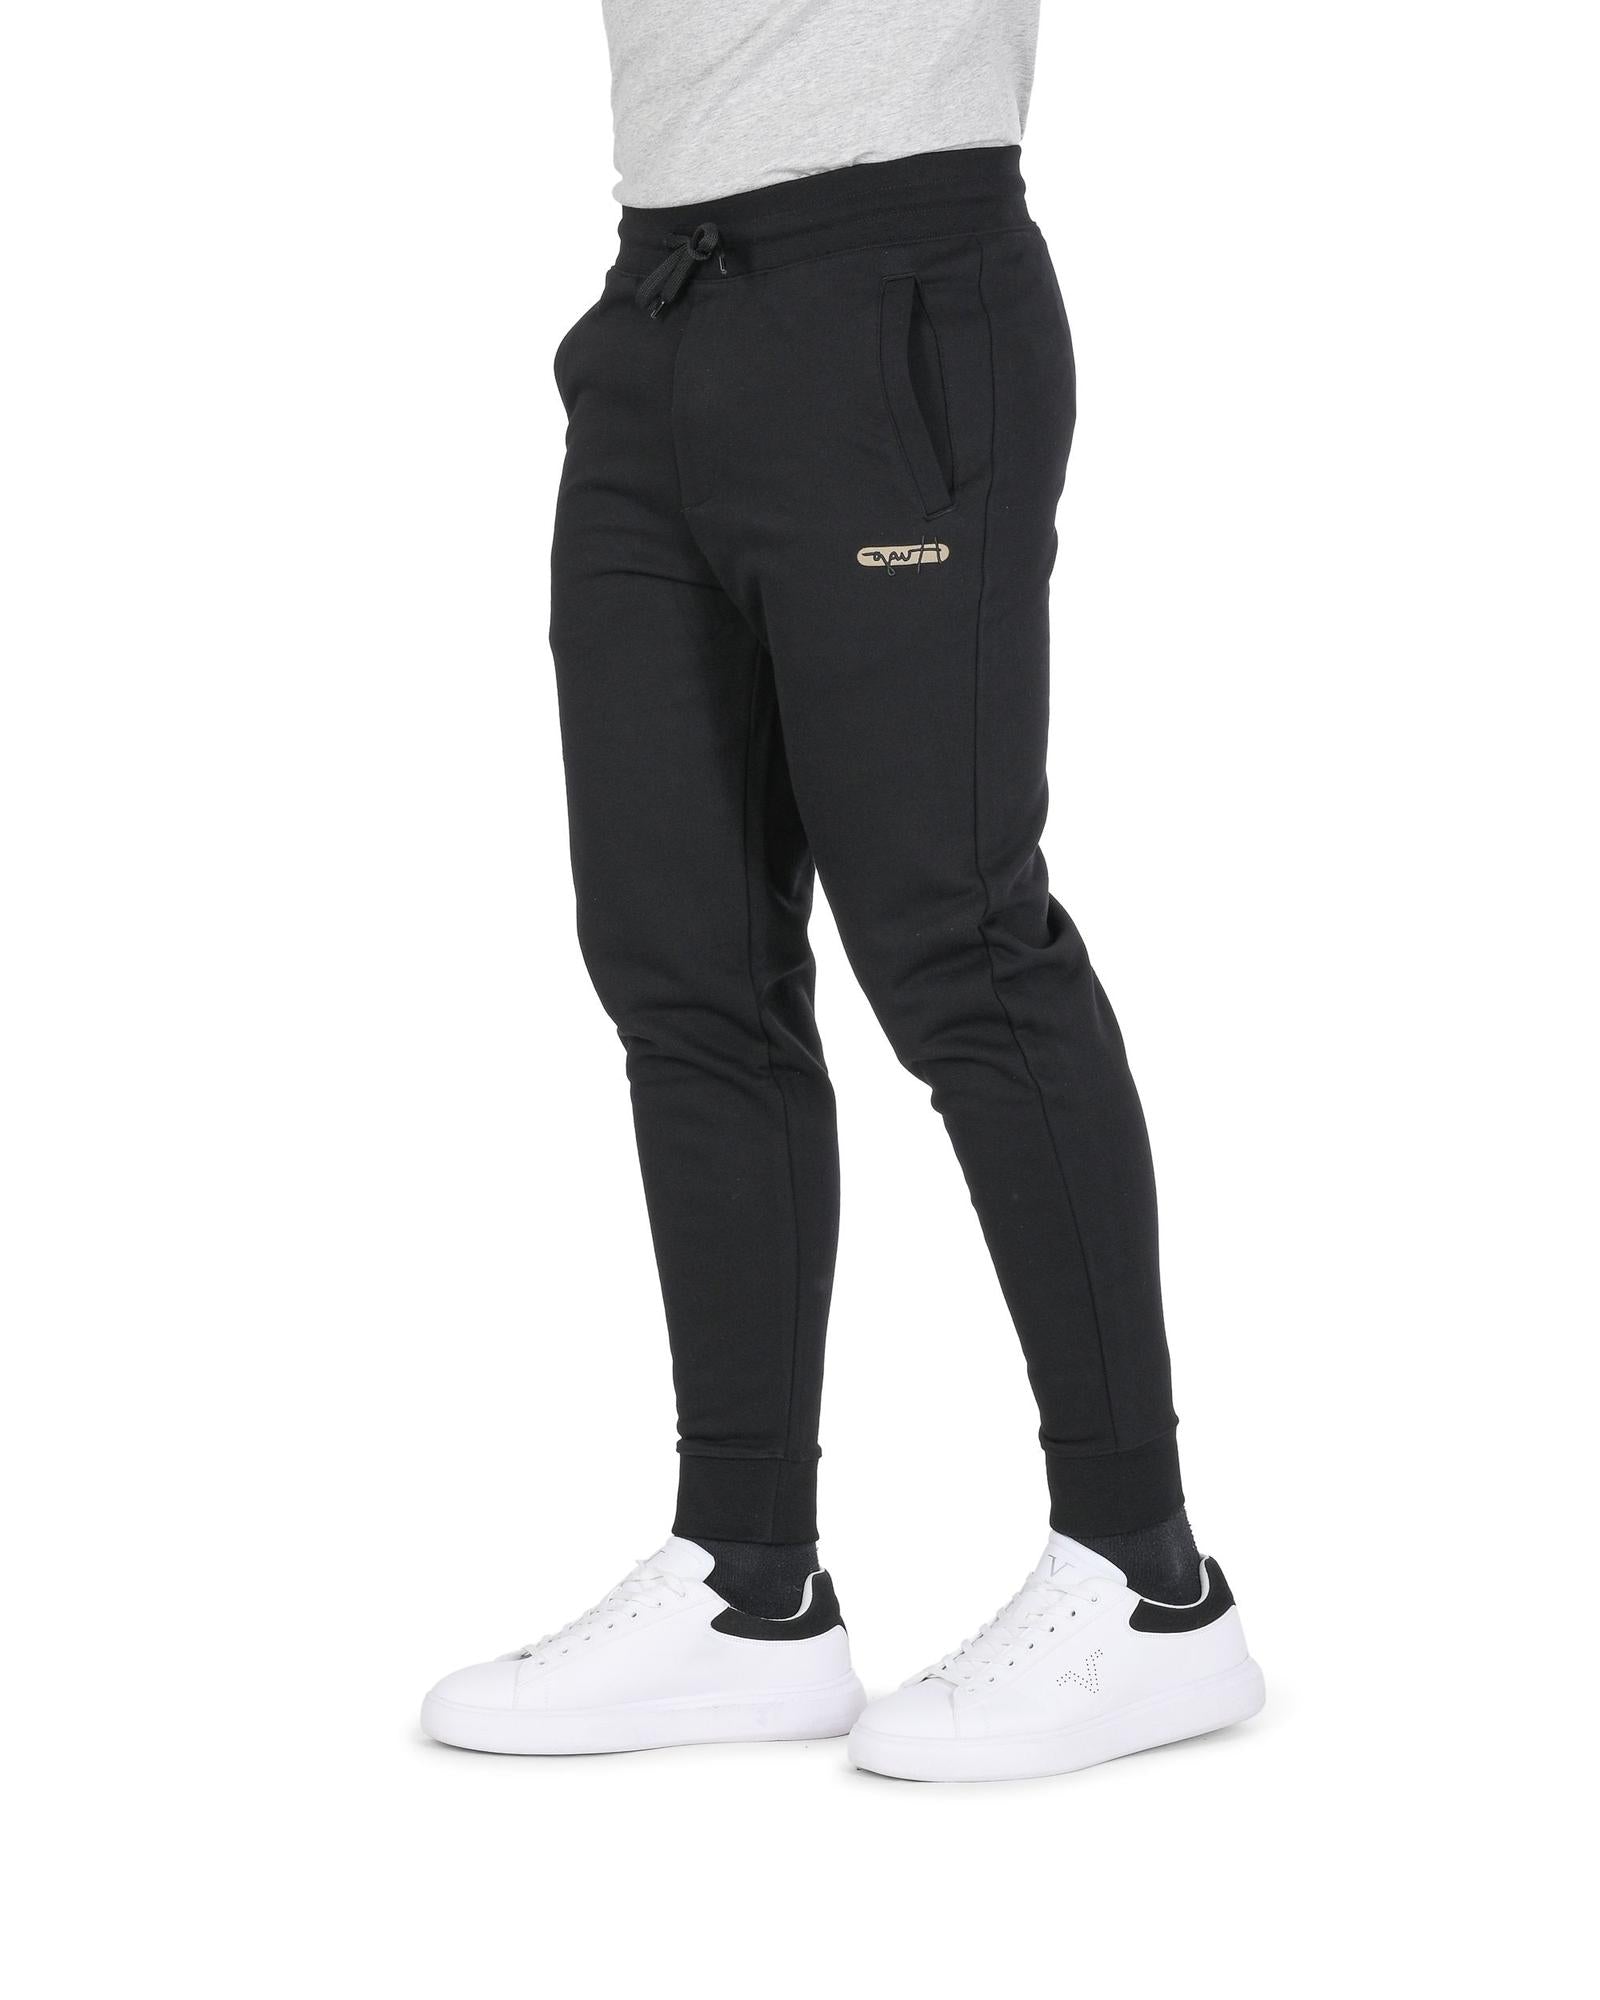 Men's Black Cotton Mens Pants in Black - XL